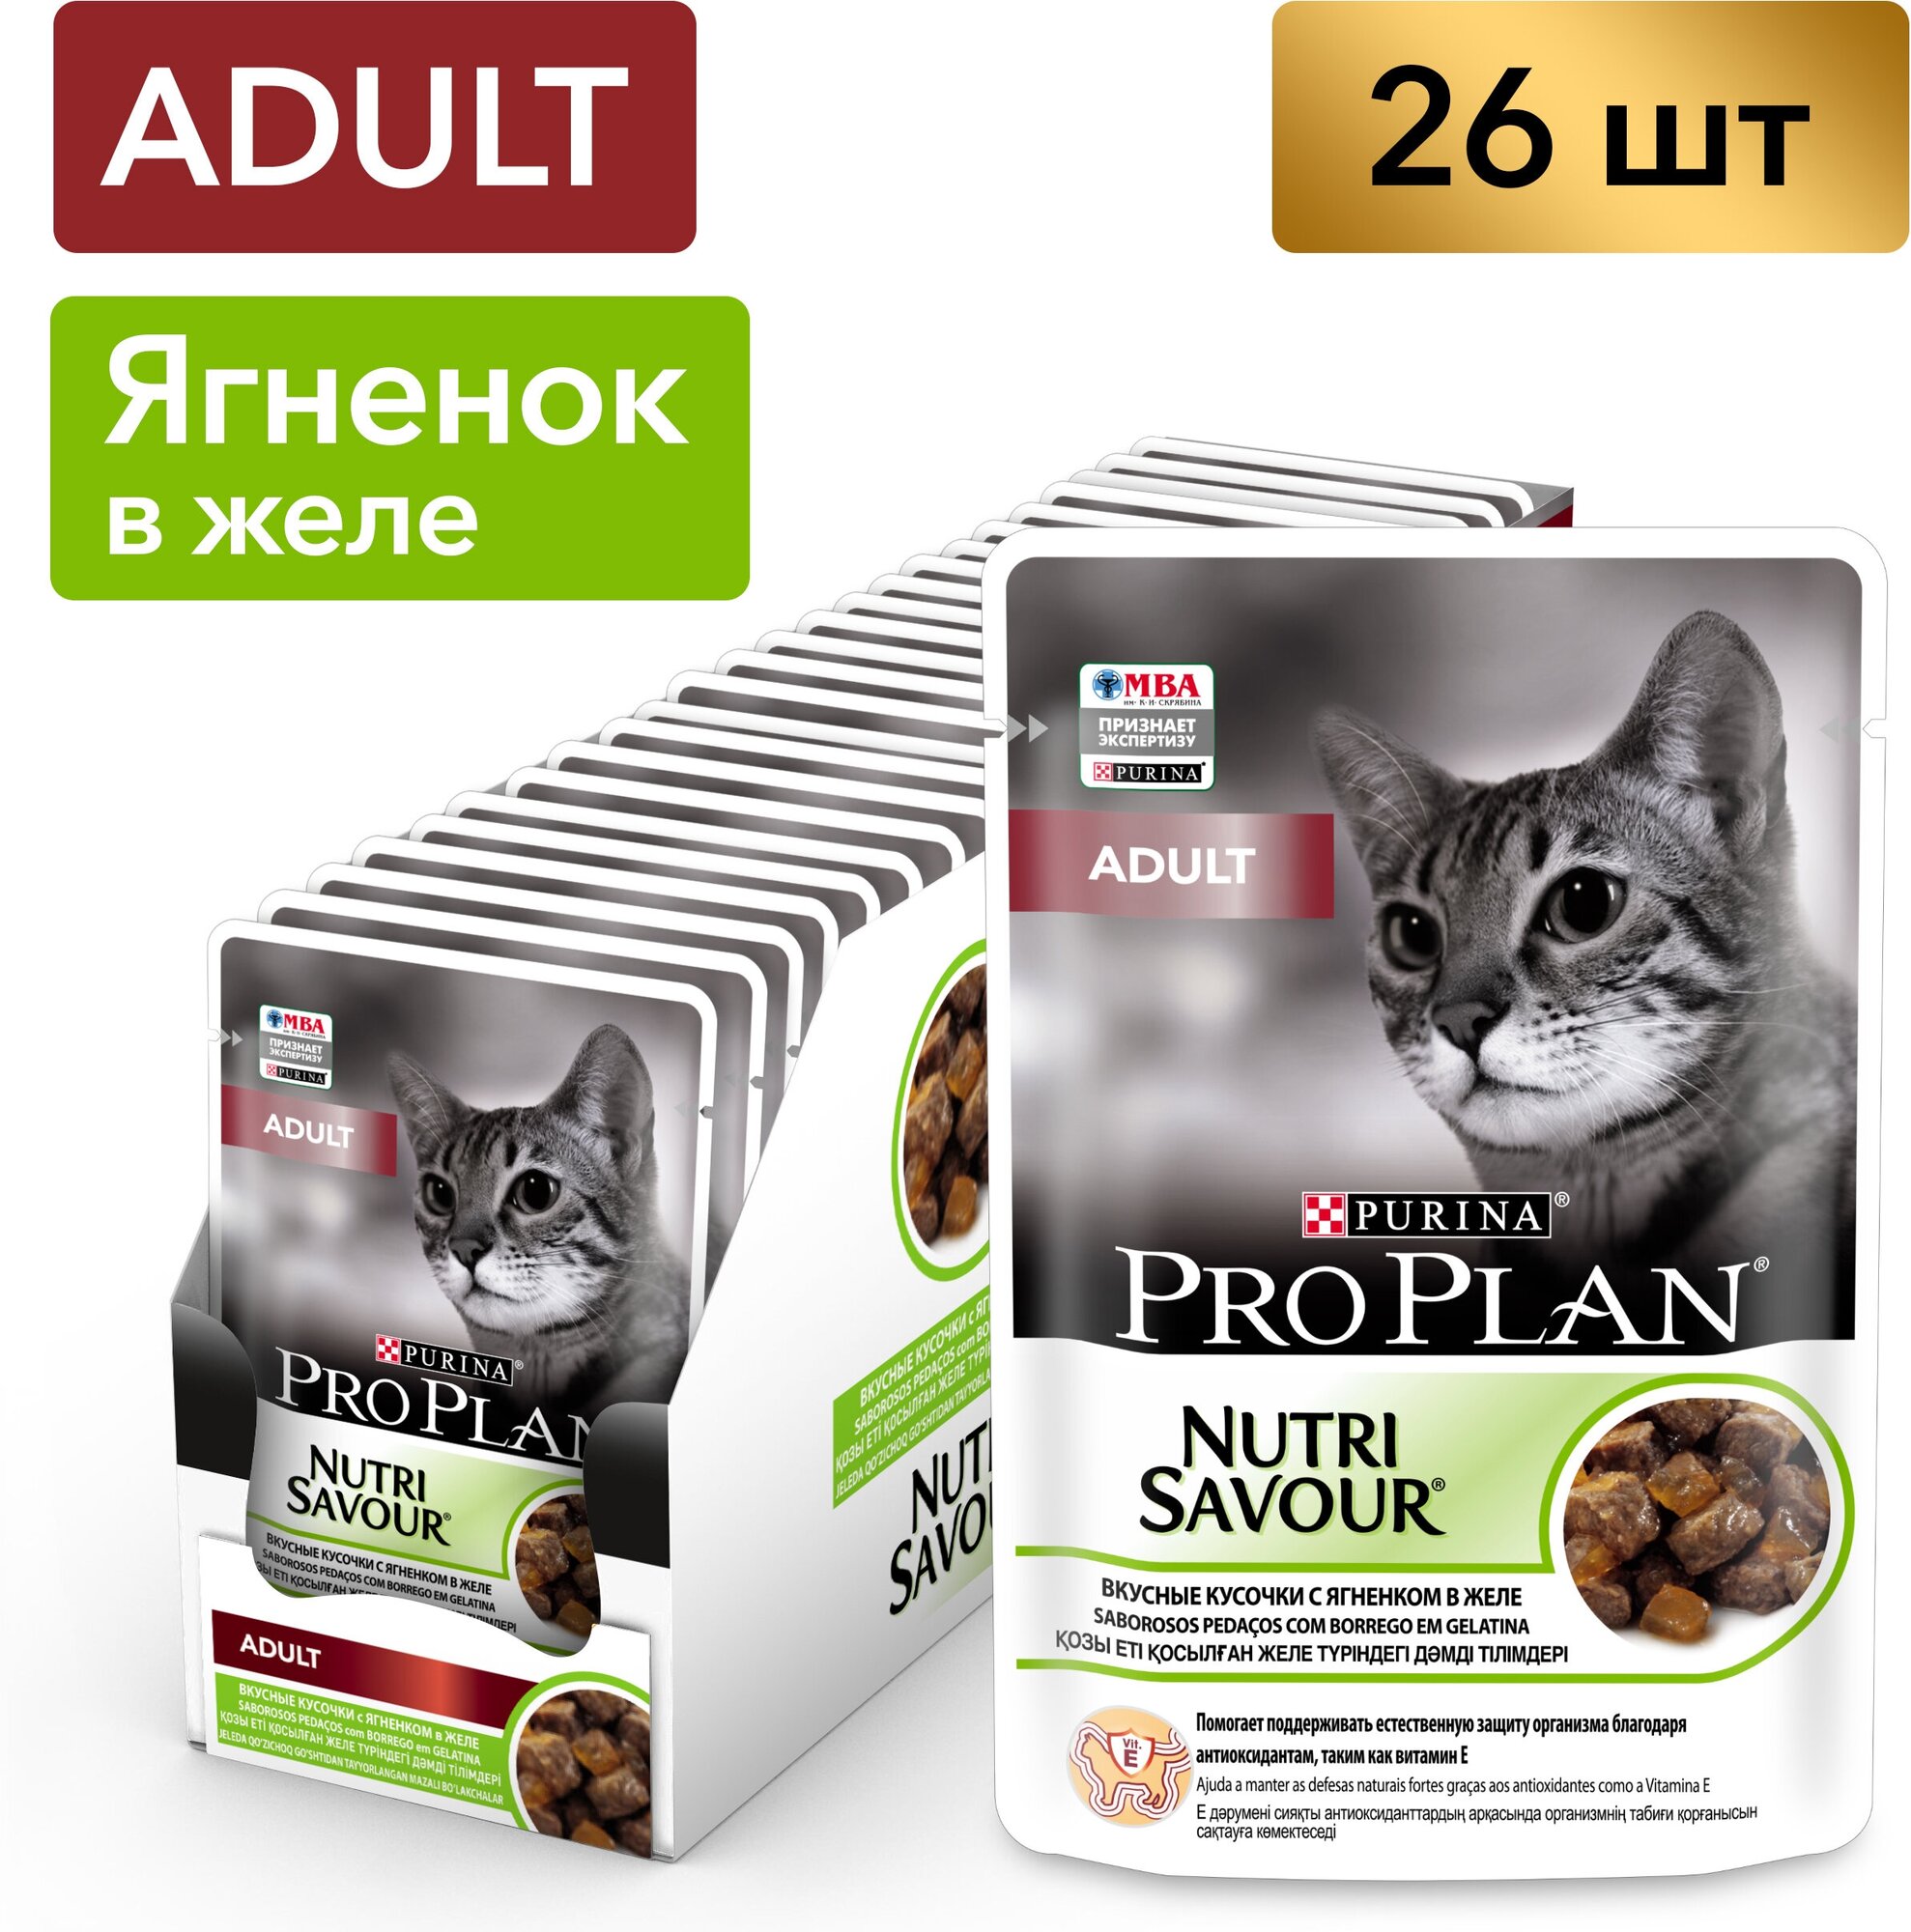 Pro Plan Nutrisavour Adult пауч для взрослых кошек (кусочки в желе) Ягненок, 85 г. упаковка 26 шт